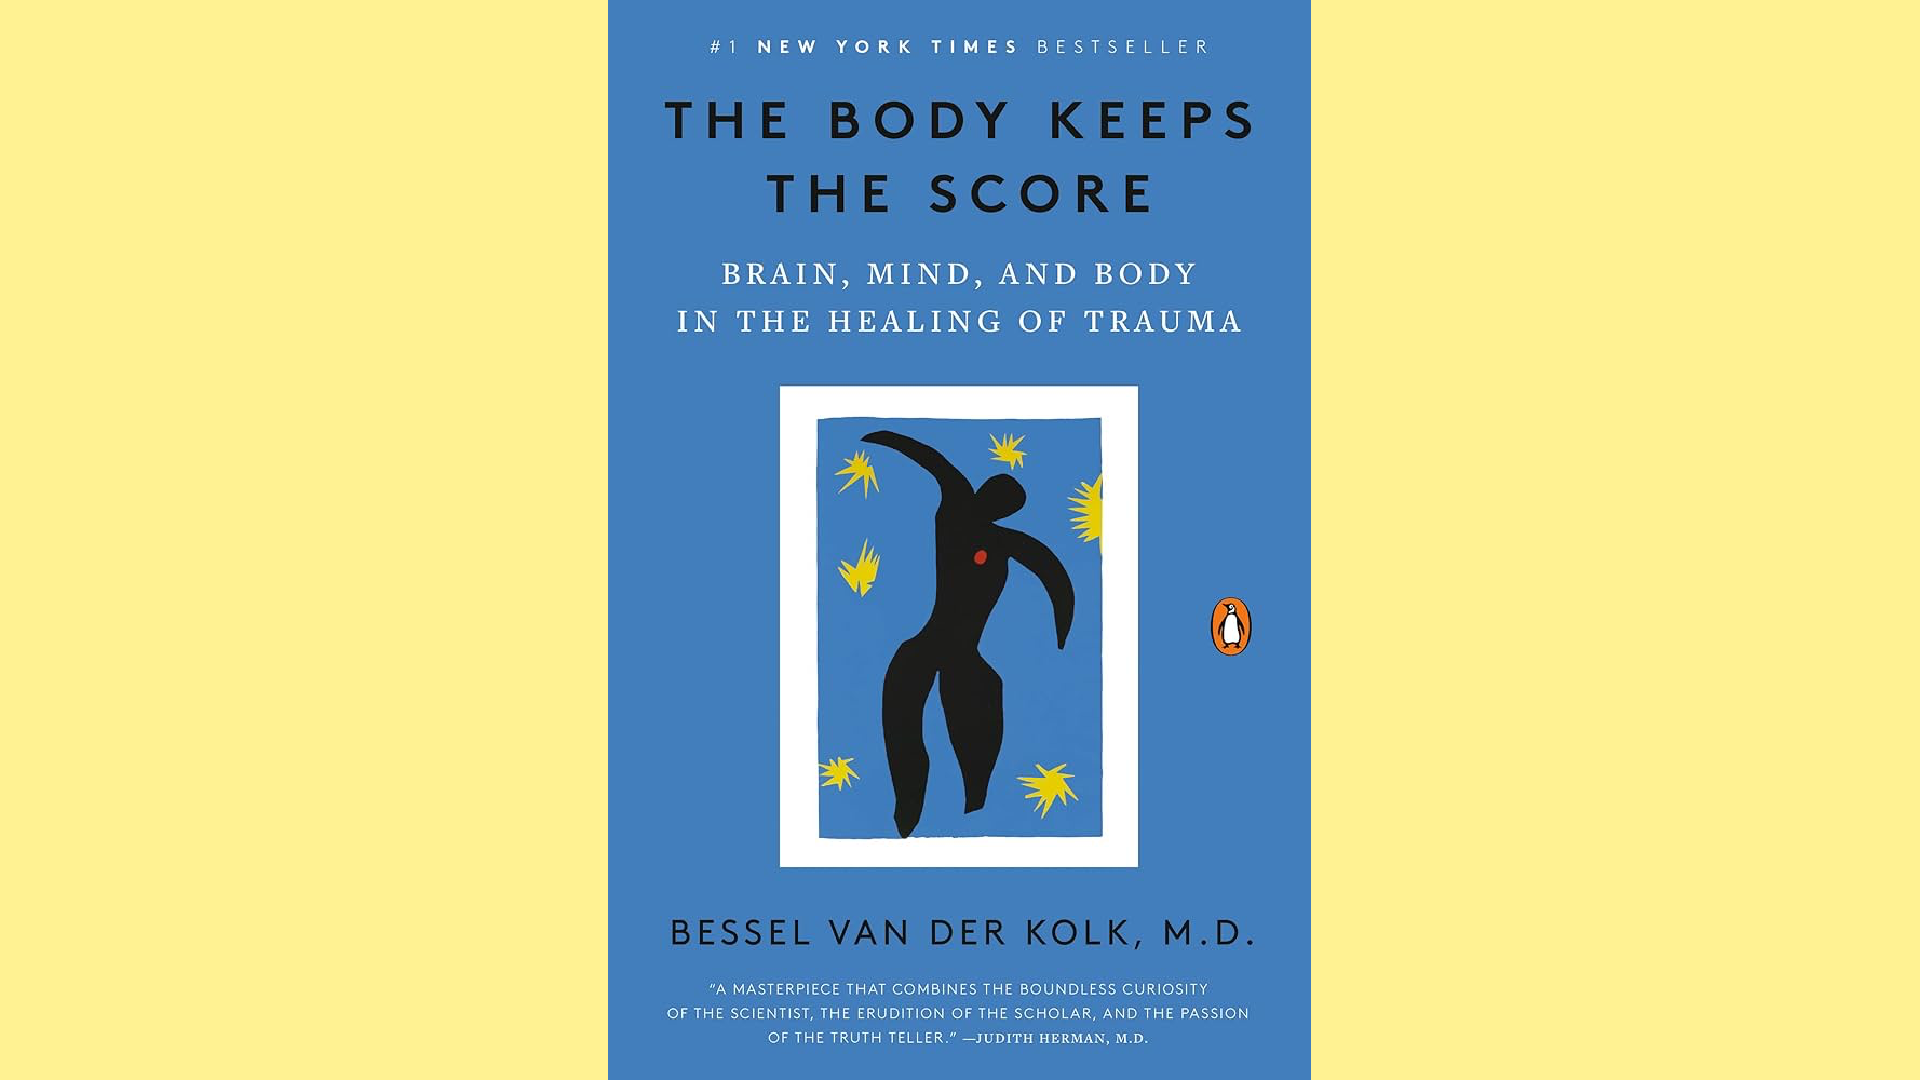 Summary: The Body Keeps the Score by Bessel van der Kolk